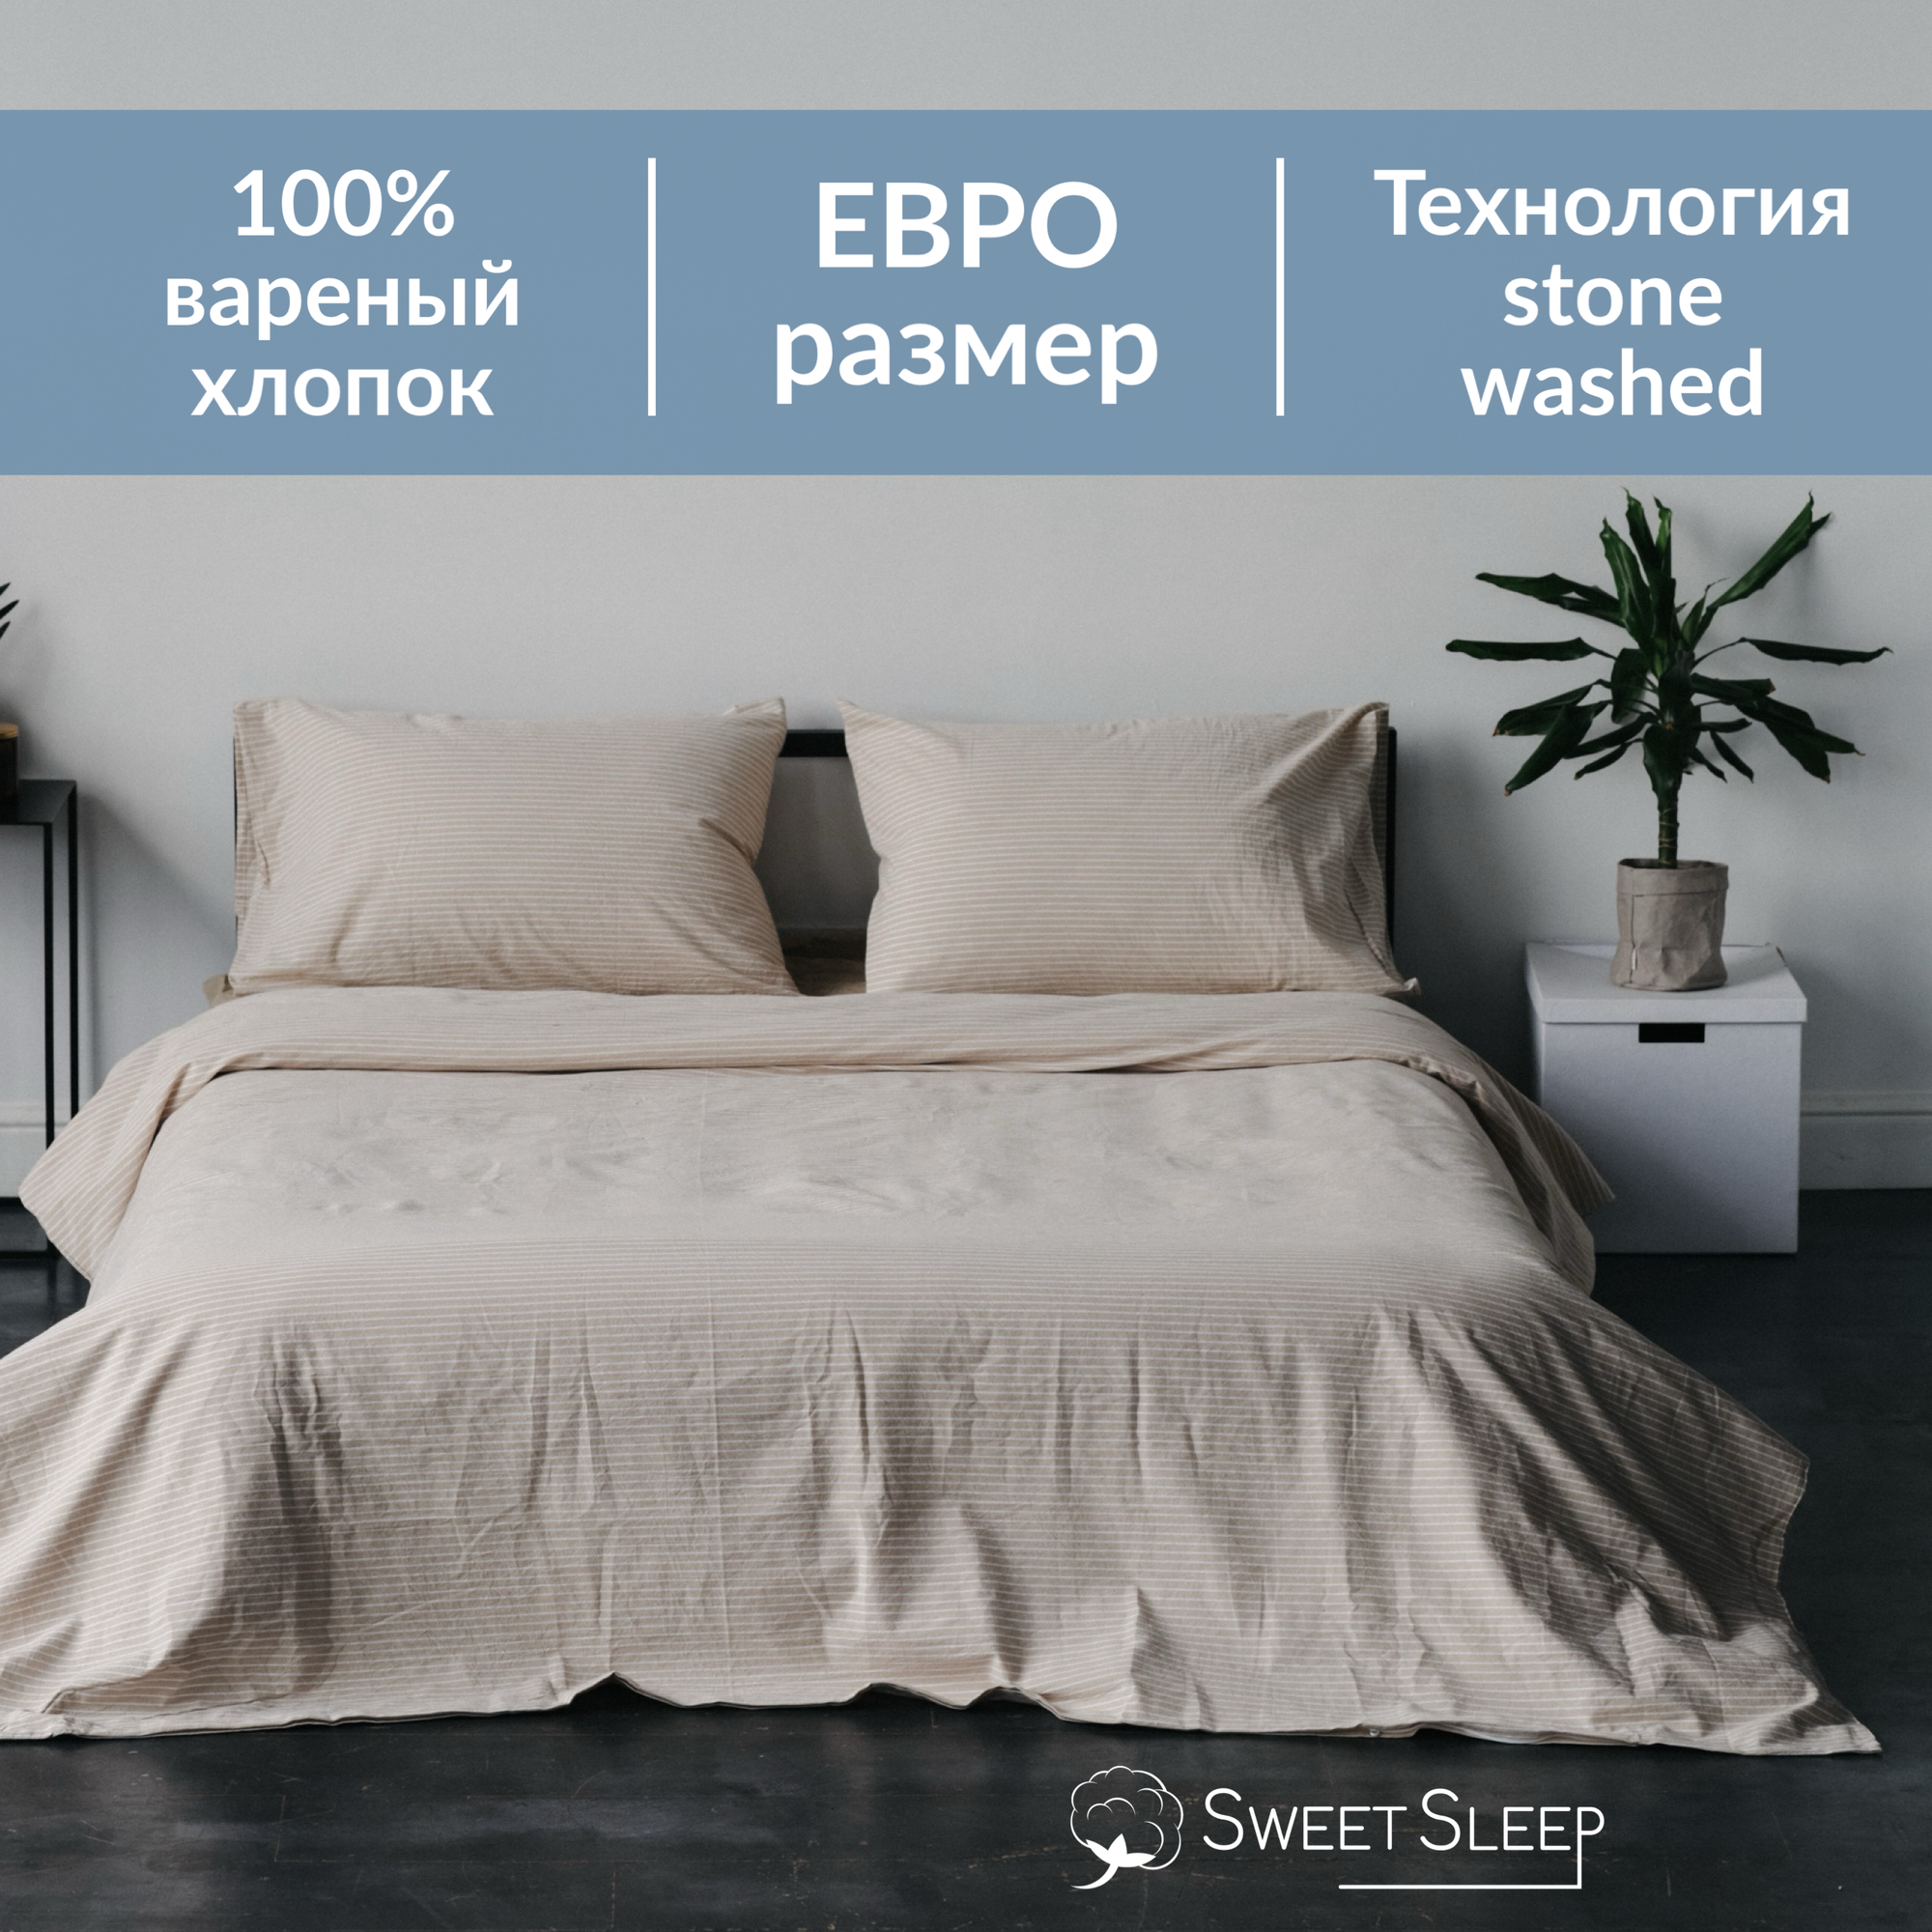 Комплект постельного белья Sweet Sleep евро вареный хлопок, бежевая полоска